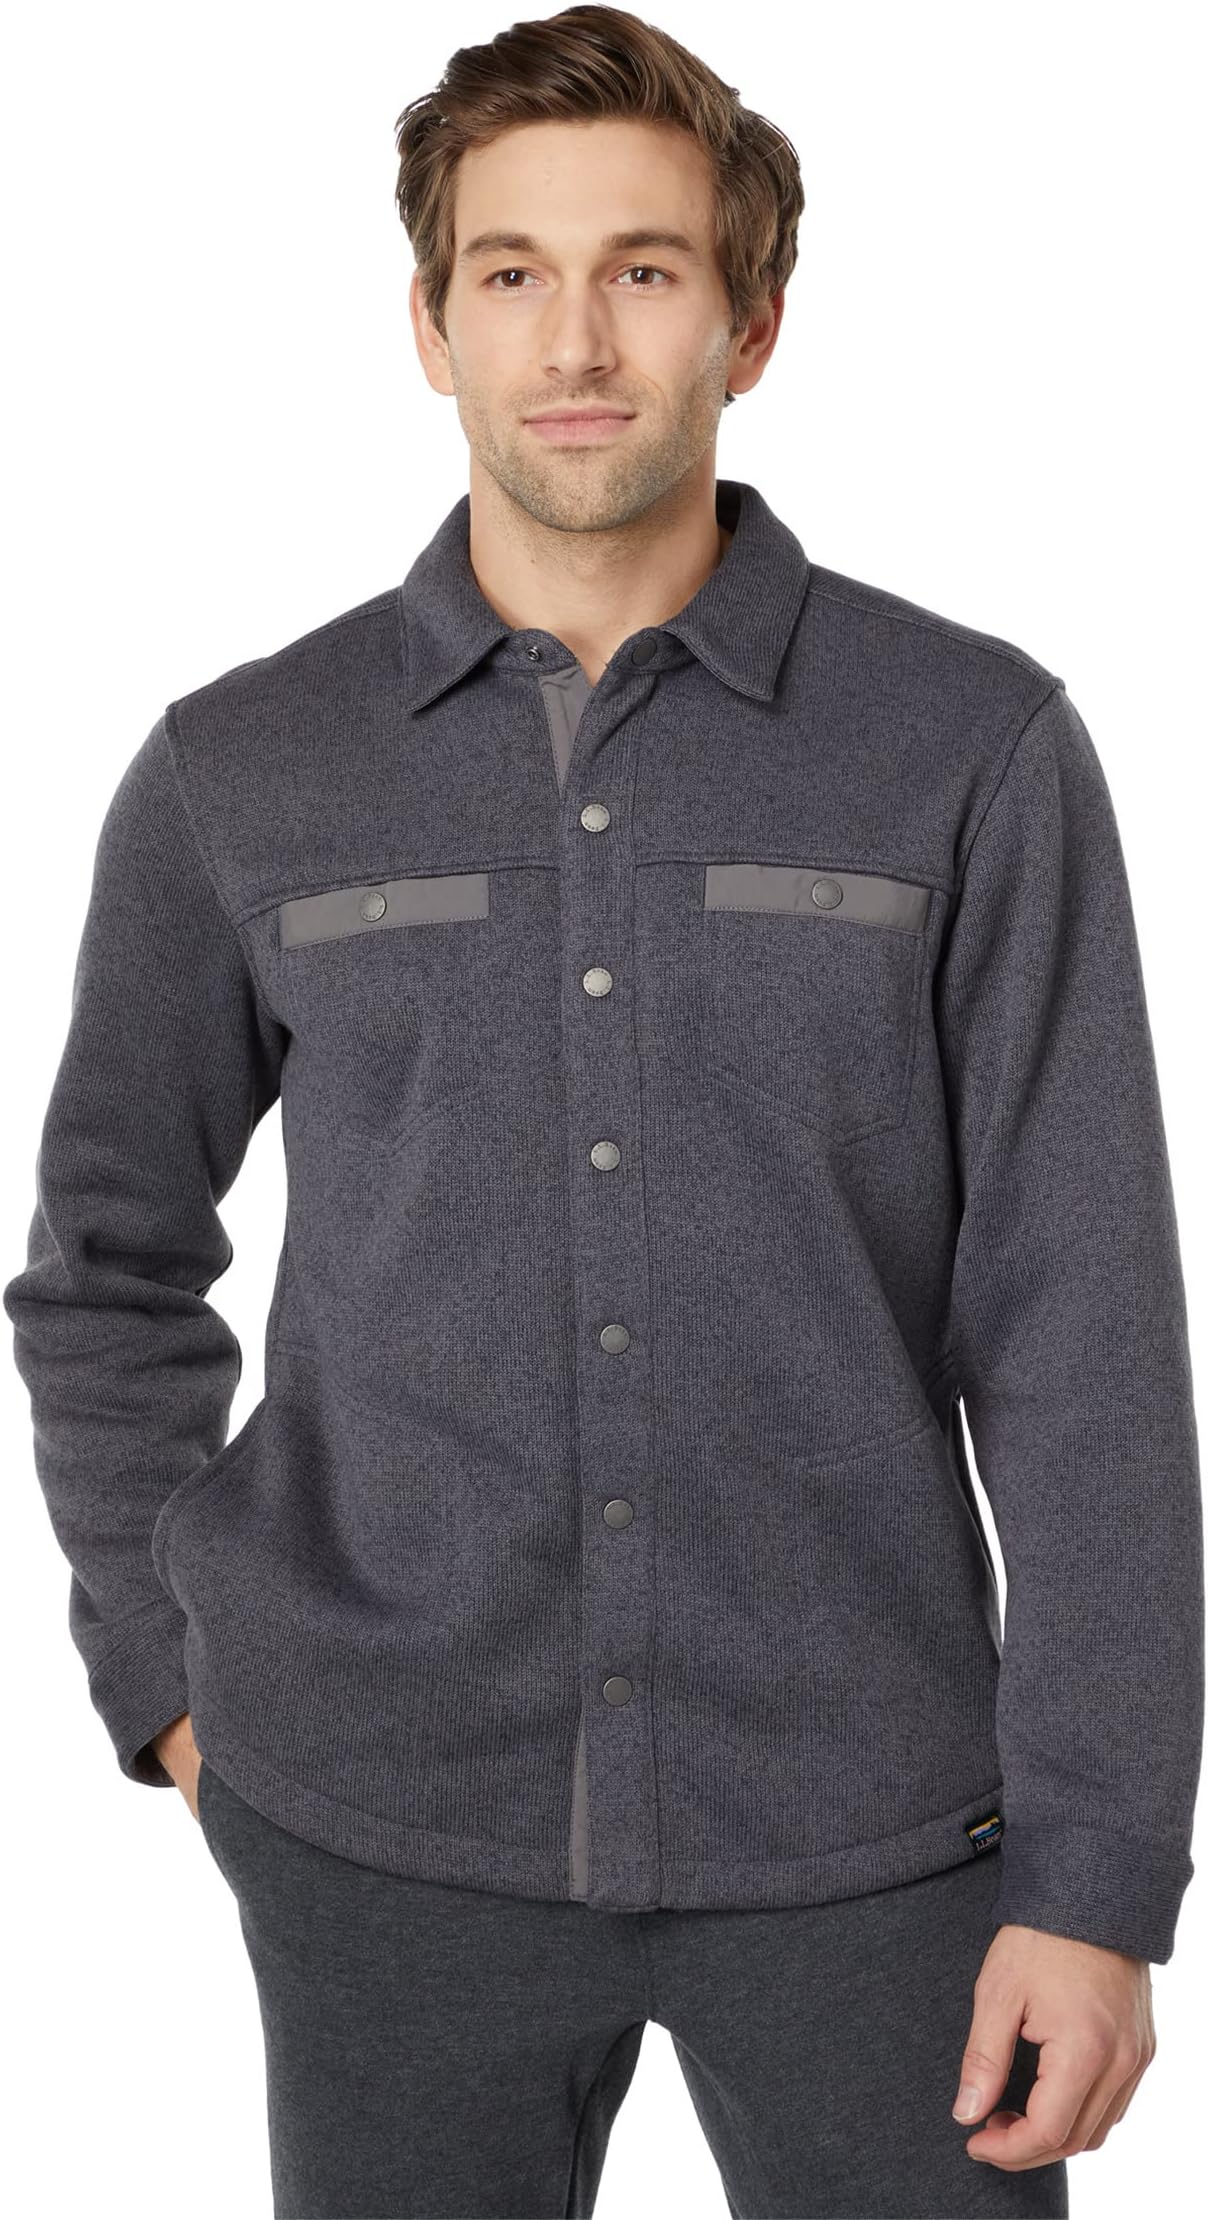 Куртка Sweater Fleece Shirt Jac Regular L.L.Bean, цвет Charcoal Gray Heather свитер флисовый жилет l l bean цвет charcoal gray heather